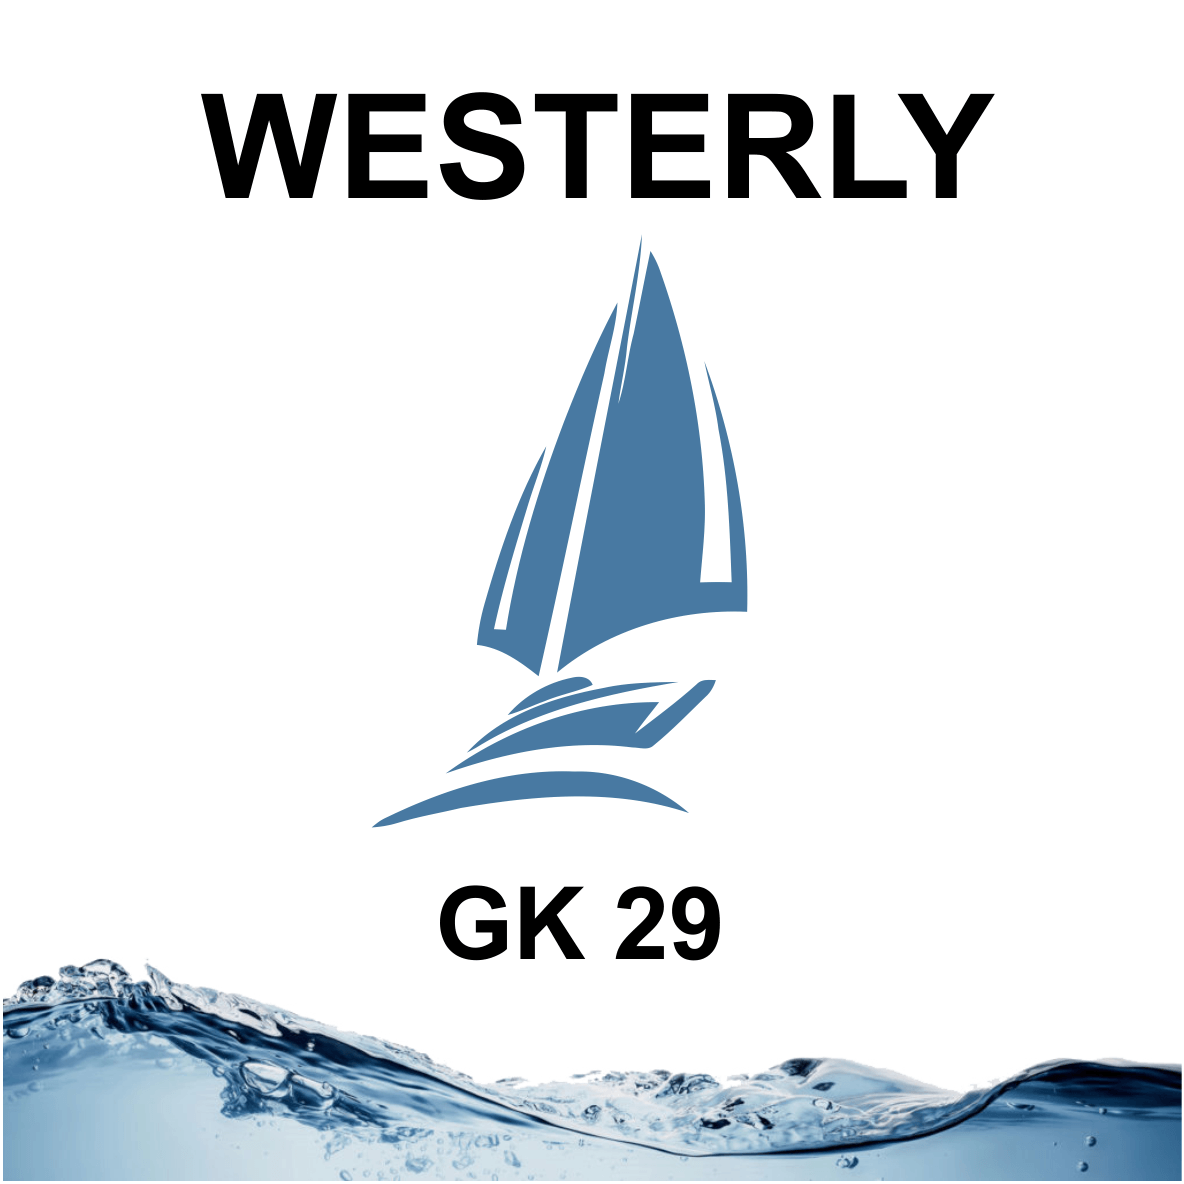 Westerly GK 29